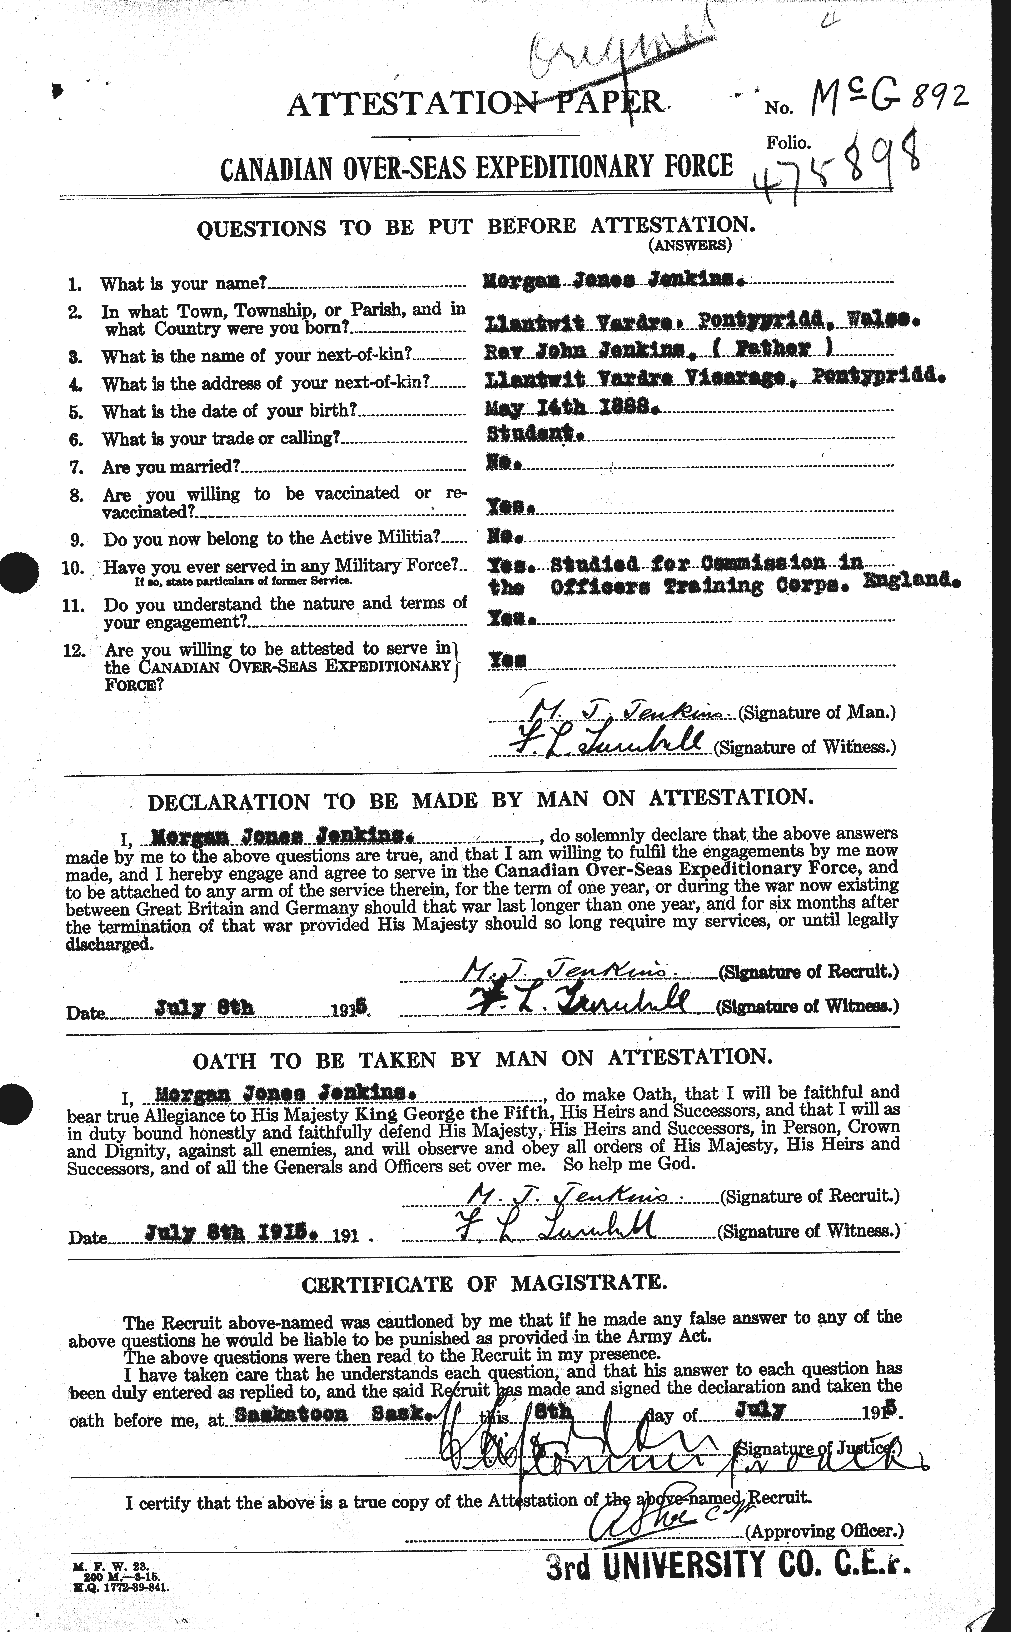 Dossiers du Personnel de la Première Guerre mondiale - CEC 416740a